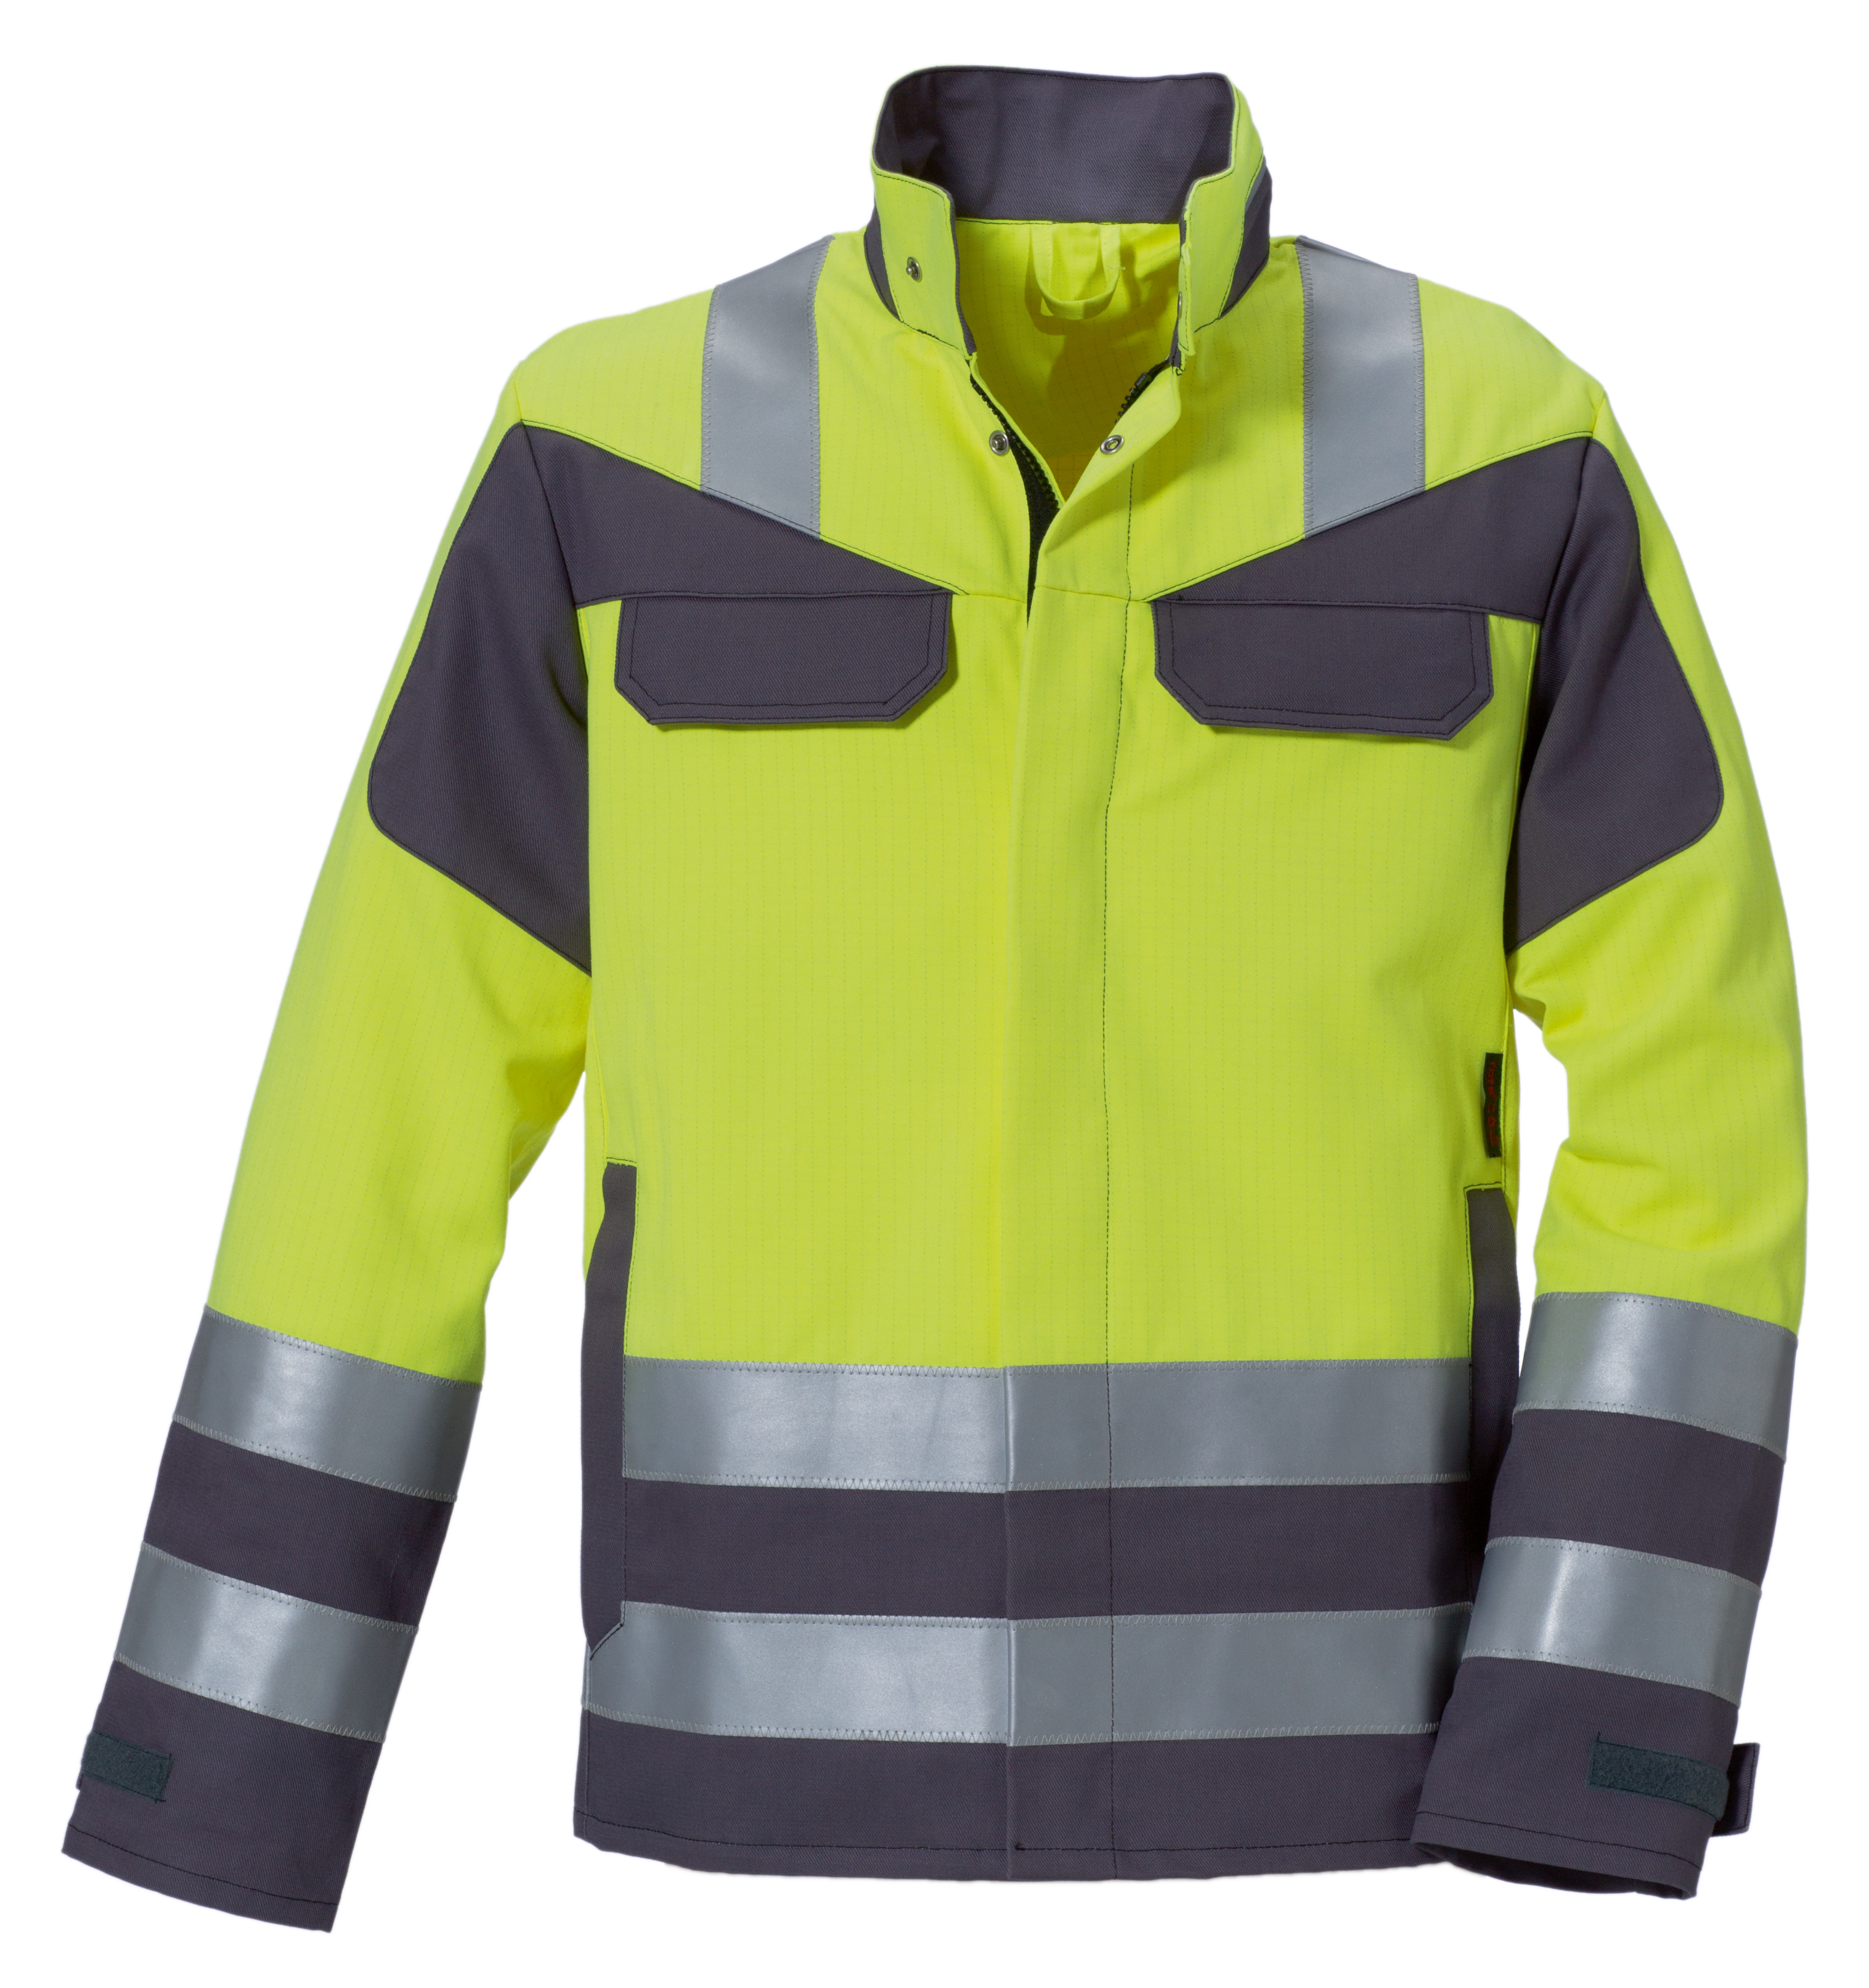 ROFA-Workwear, Warnschutz-Jacke, Multi 7, ca. 330 g/m², leuchtgelb-grau